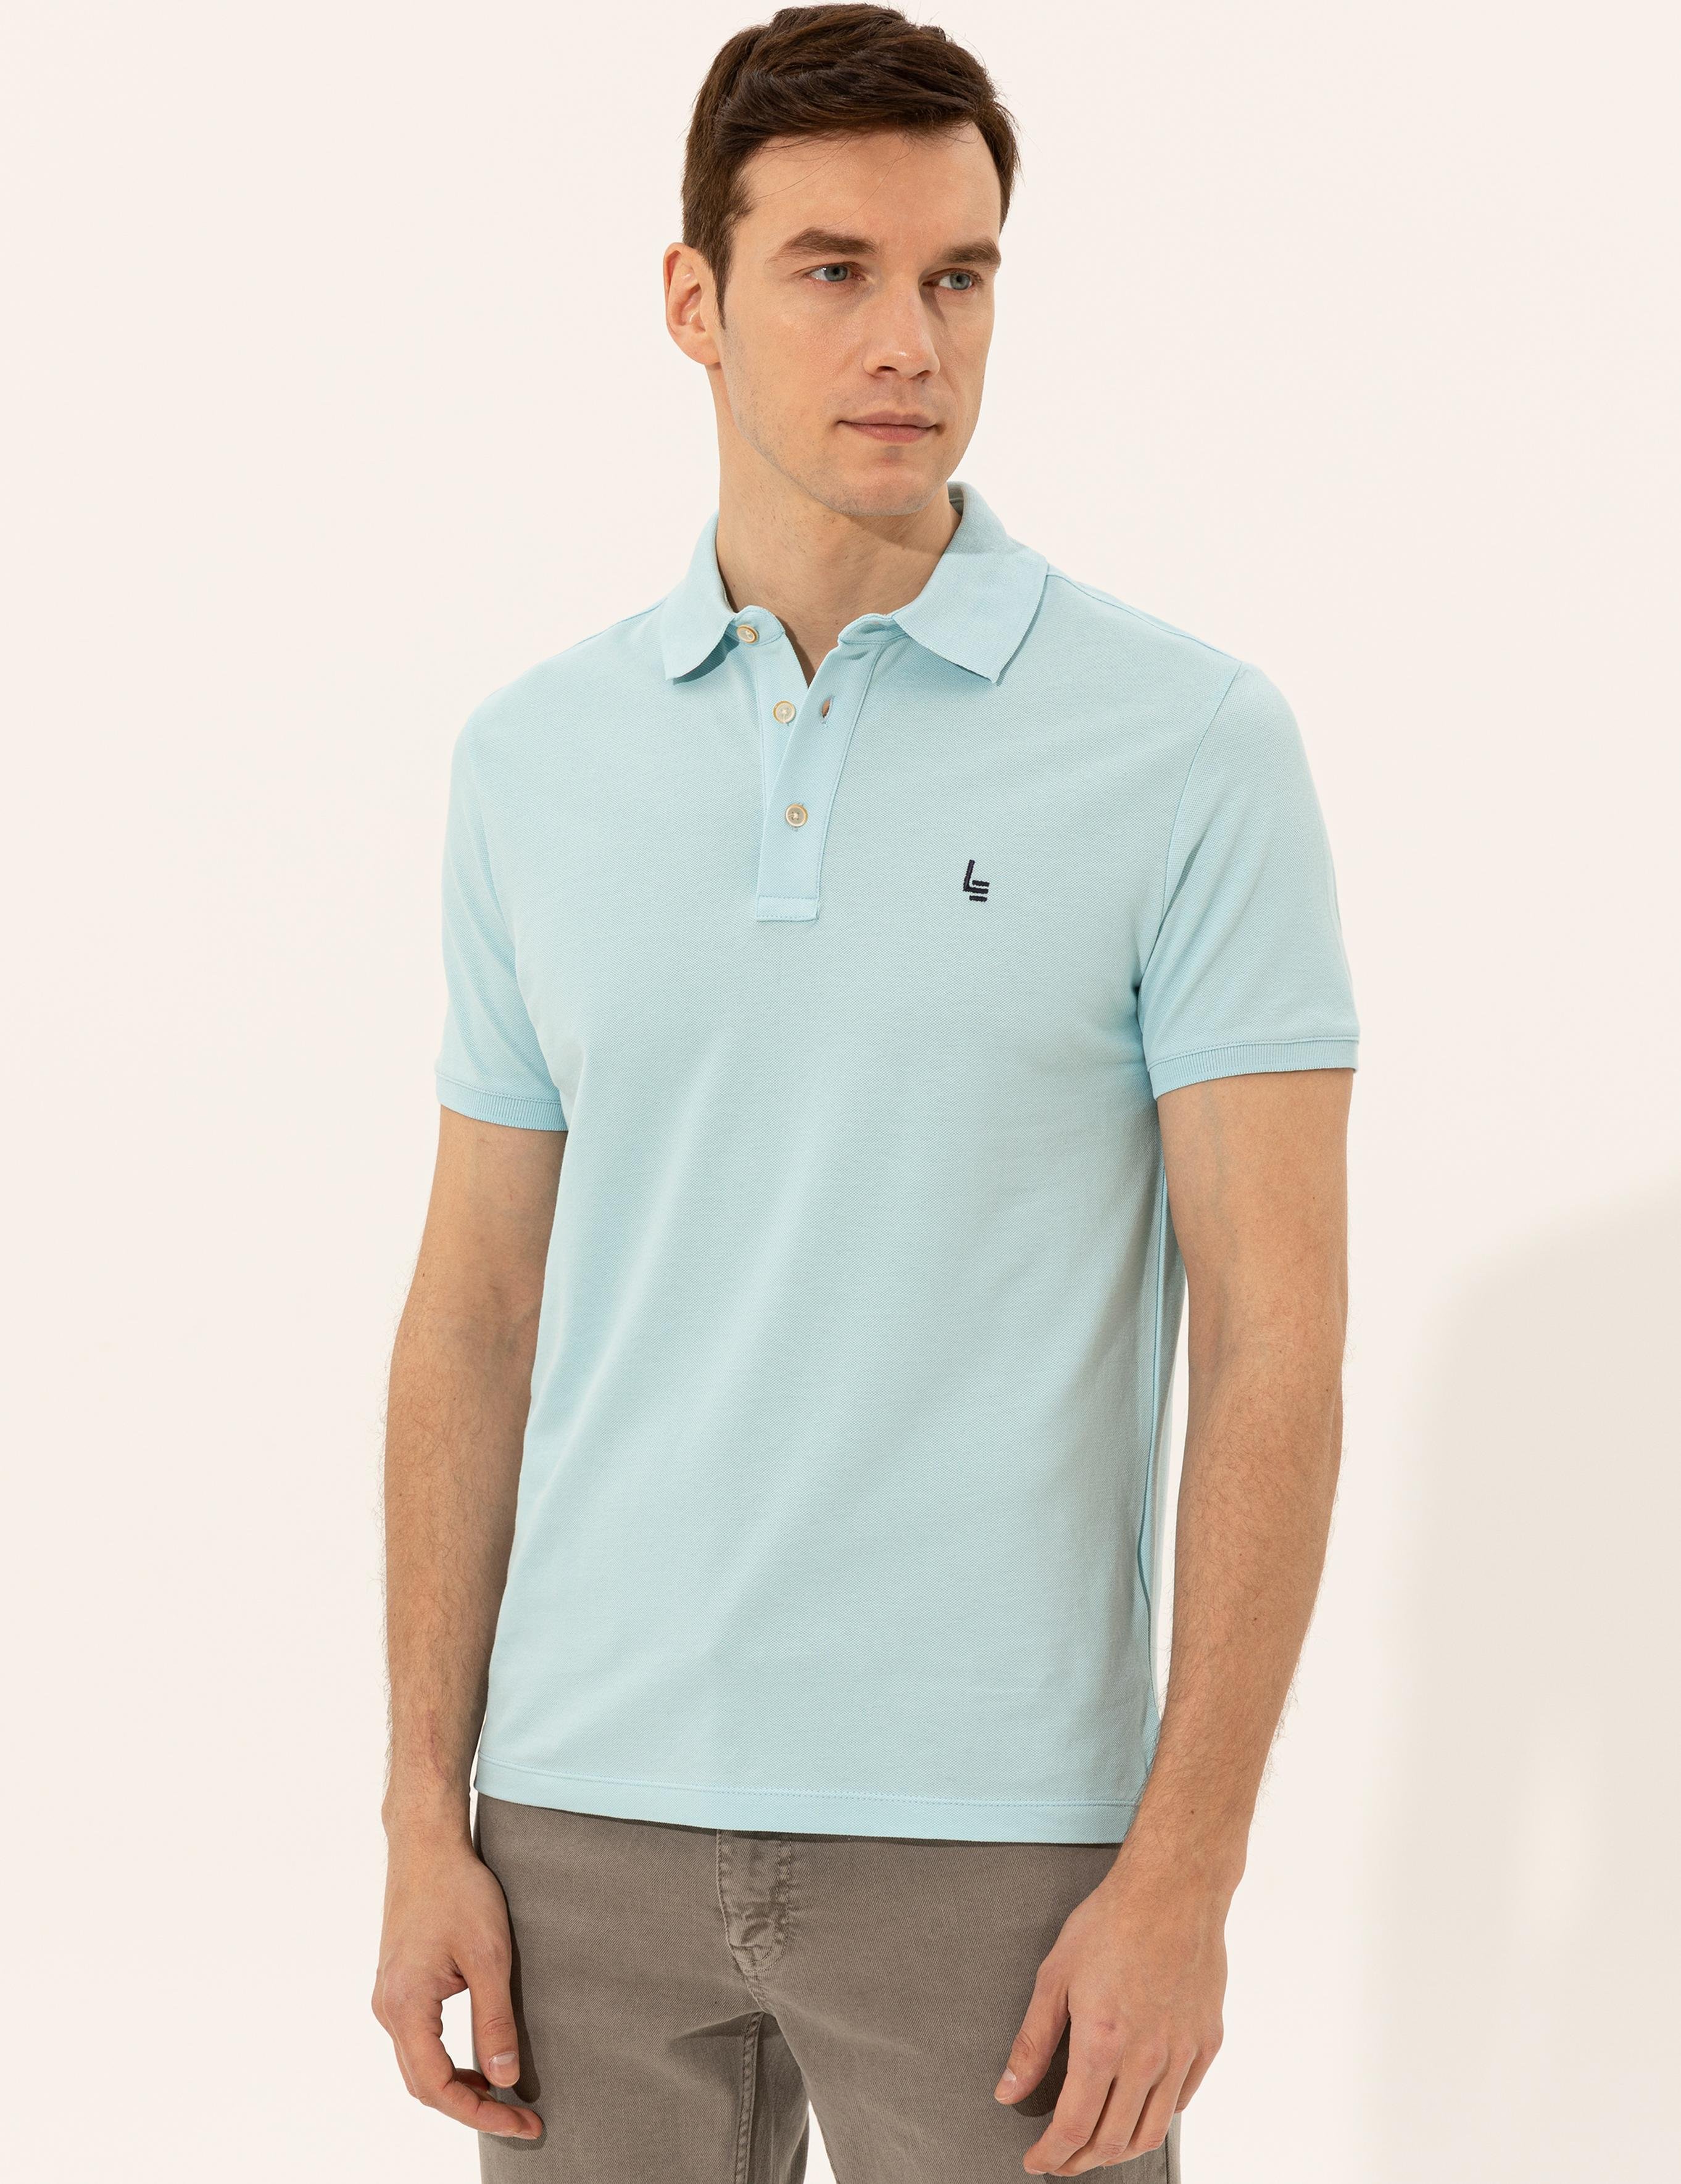 Açık Mavi Polo Yaka Slim Fit Basic T-Shirt